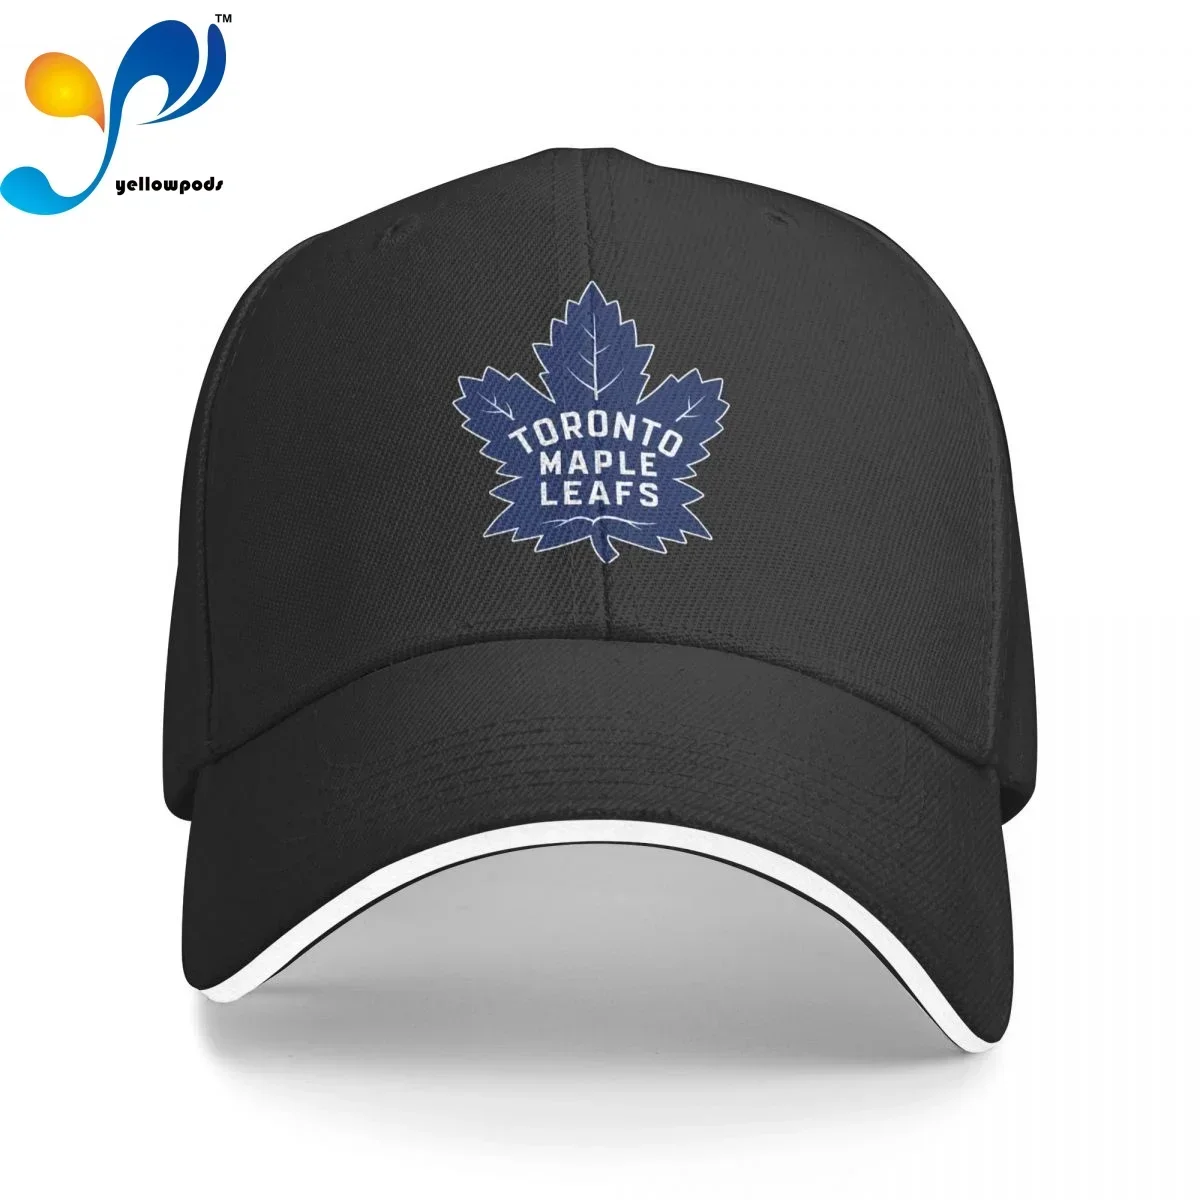 

Унисекс хлопковая кепка для женщин и мужчин, модная бейсболка с кленовыми листьями, Торонто, регулируемая, для улицы